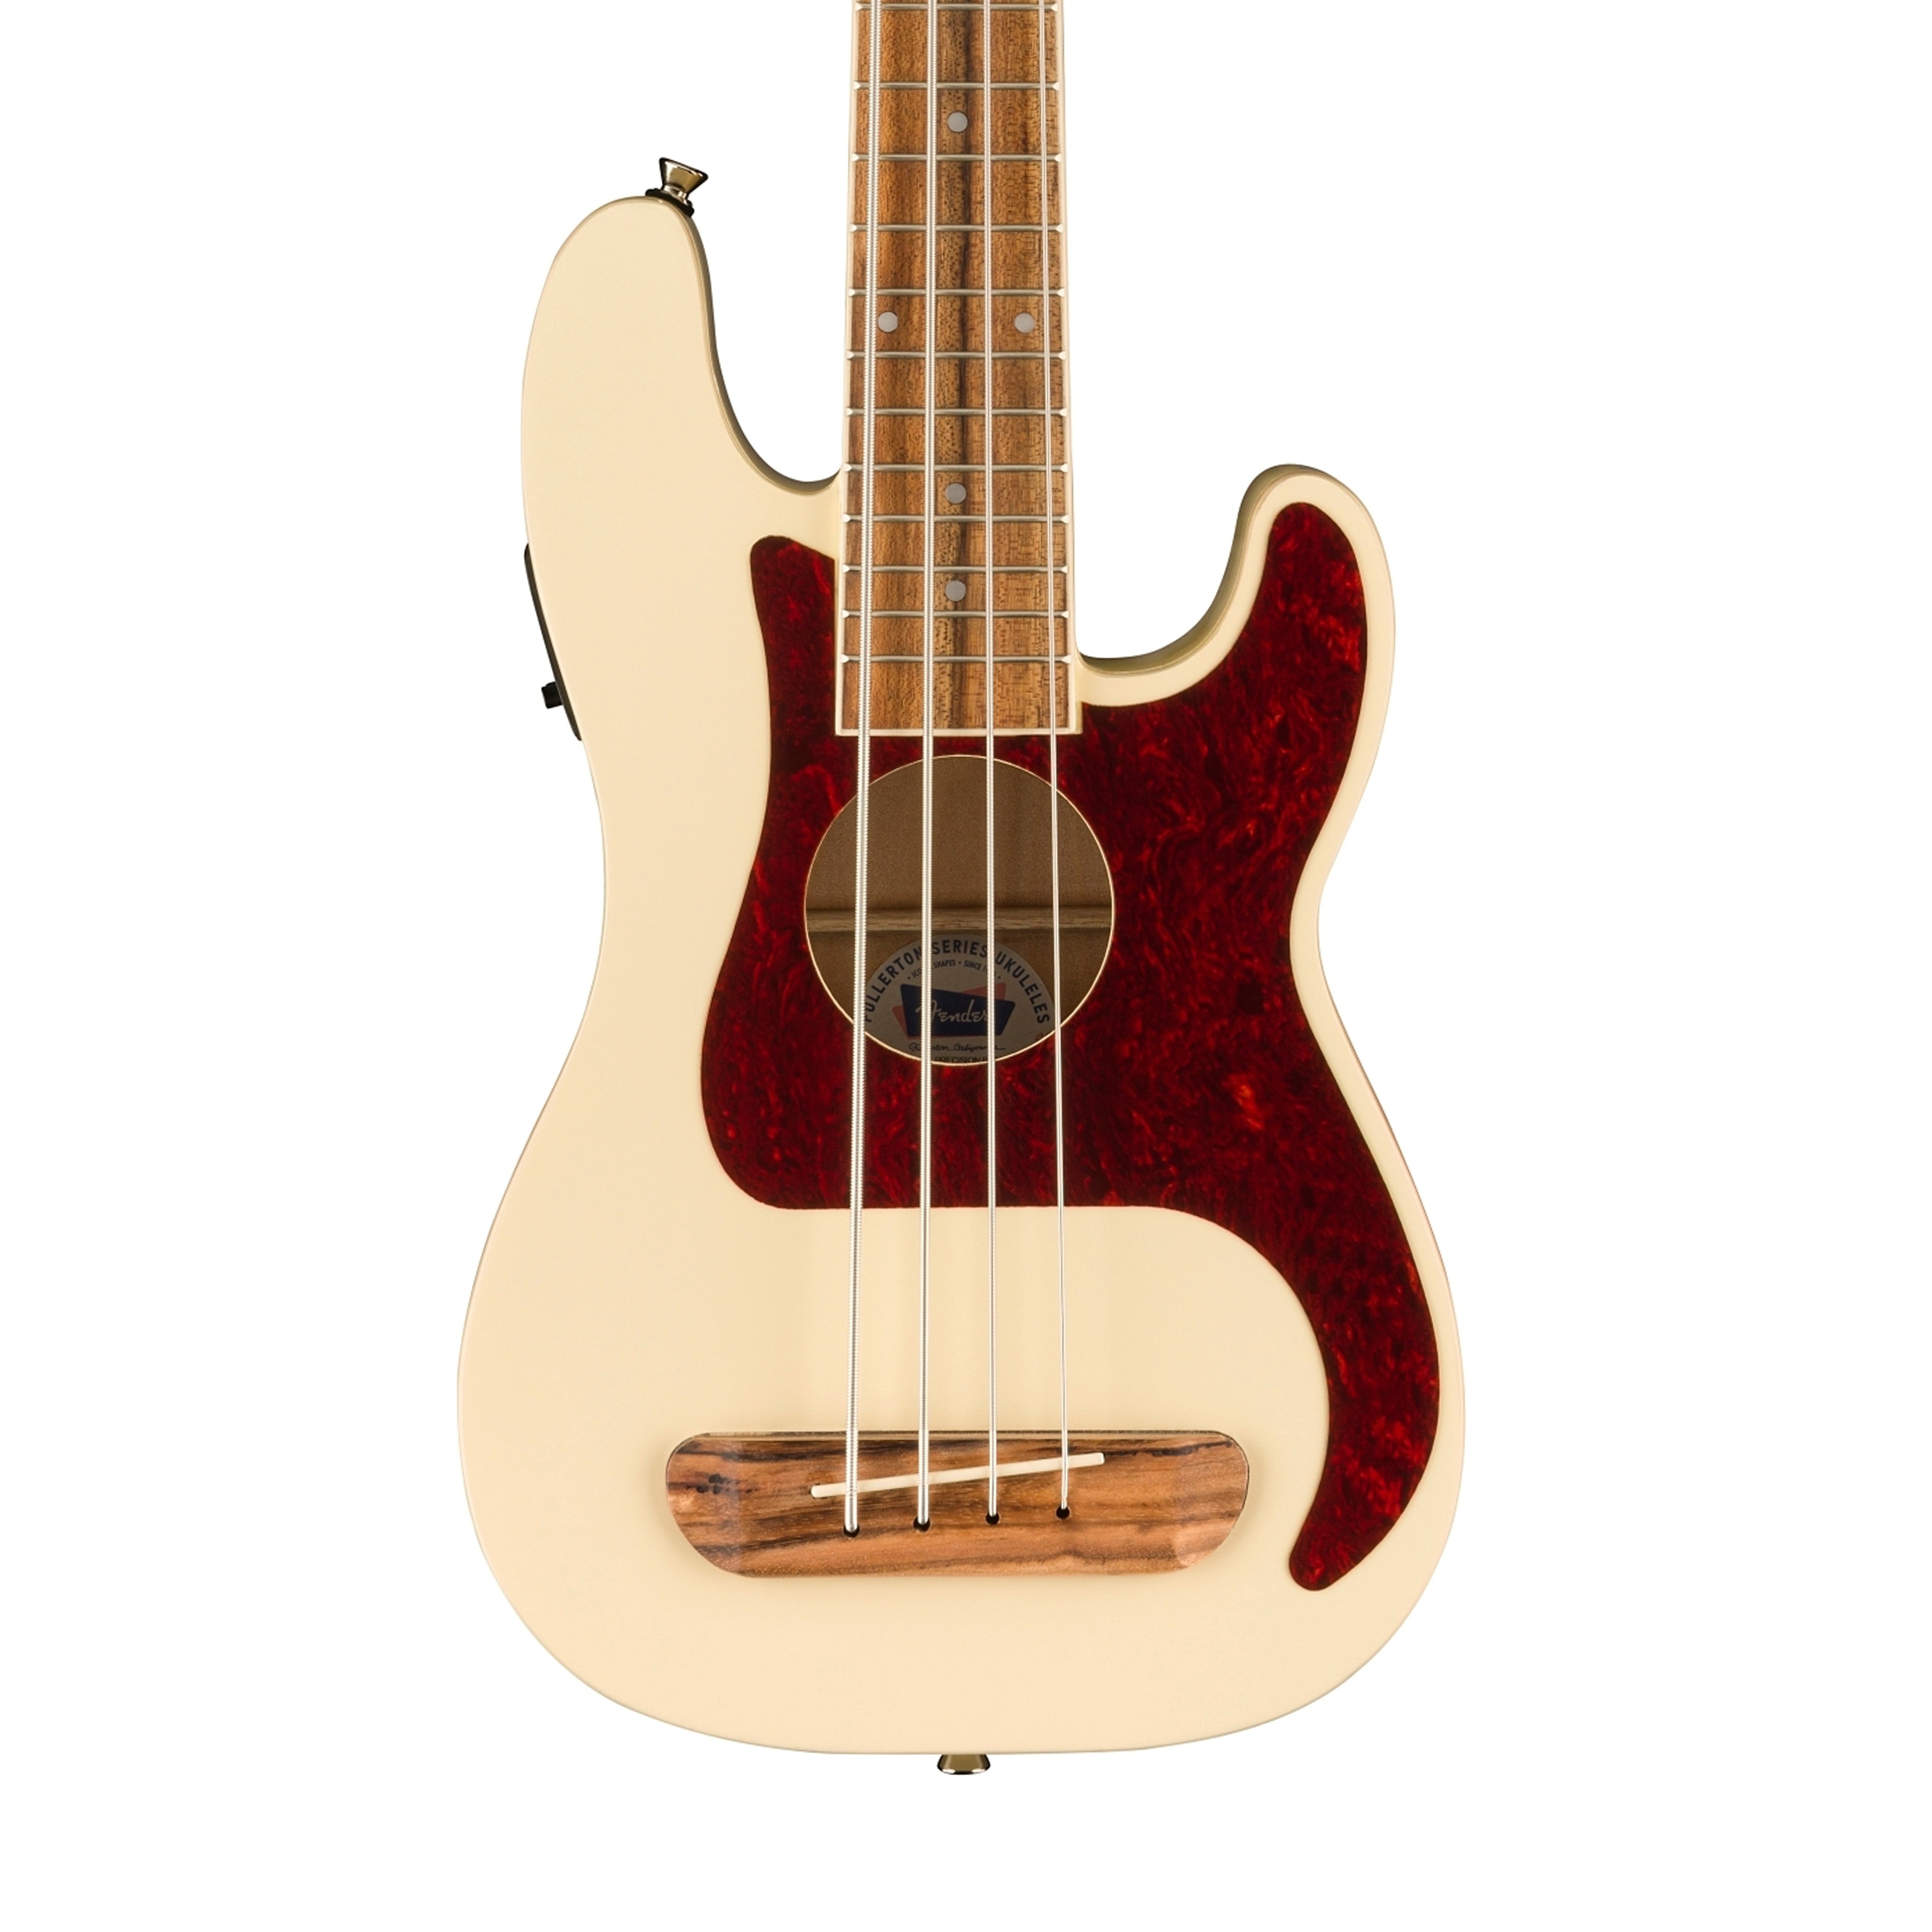 Fender Fullerton Precision Bass Ukulele, Olympic White